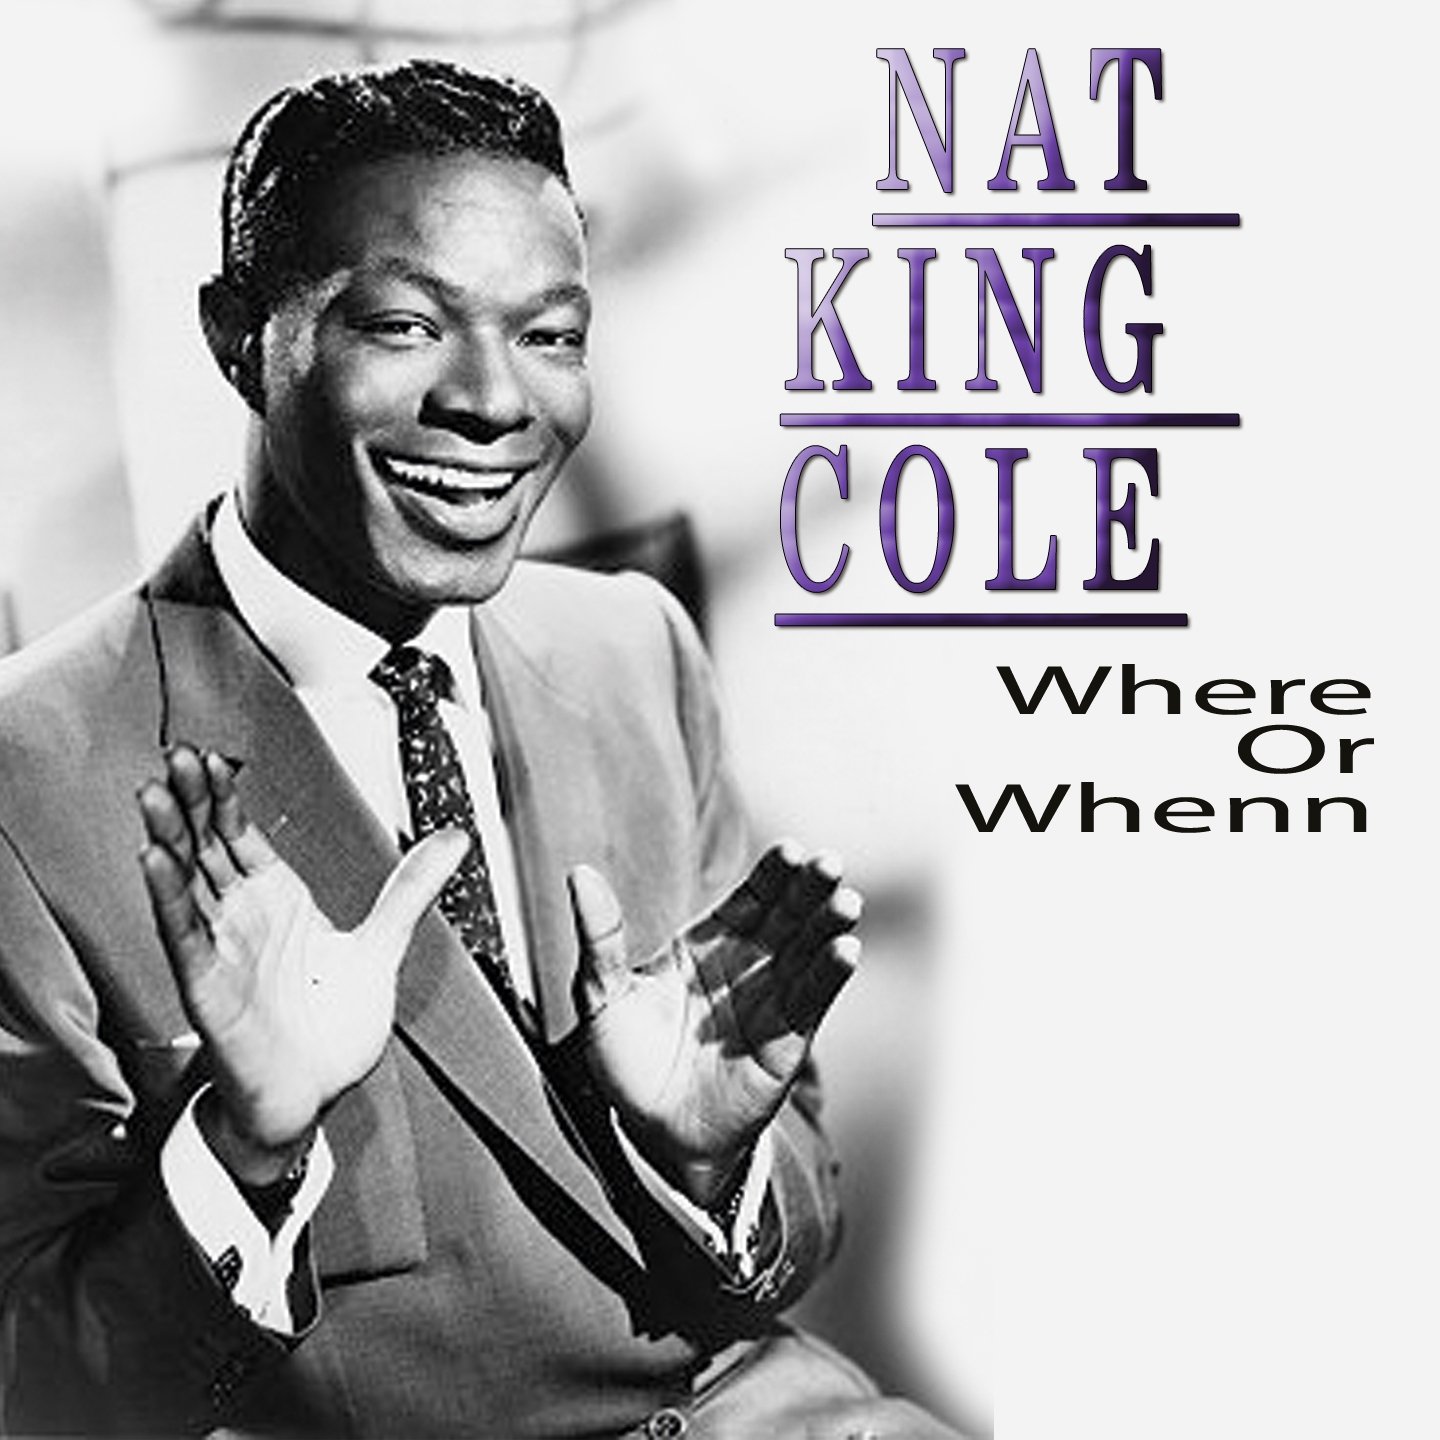 Нат коул. Нат Кинг Коул. L-O-V-E нэт Кинг Коул. Love Nat King Cole. Нэт Кинг Коул – тема.